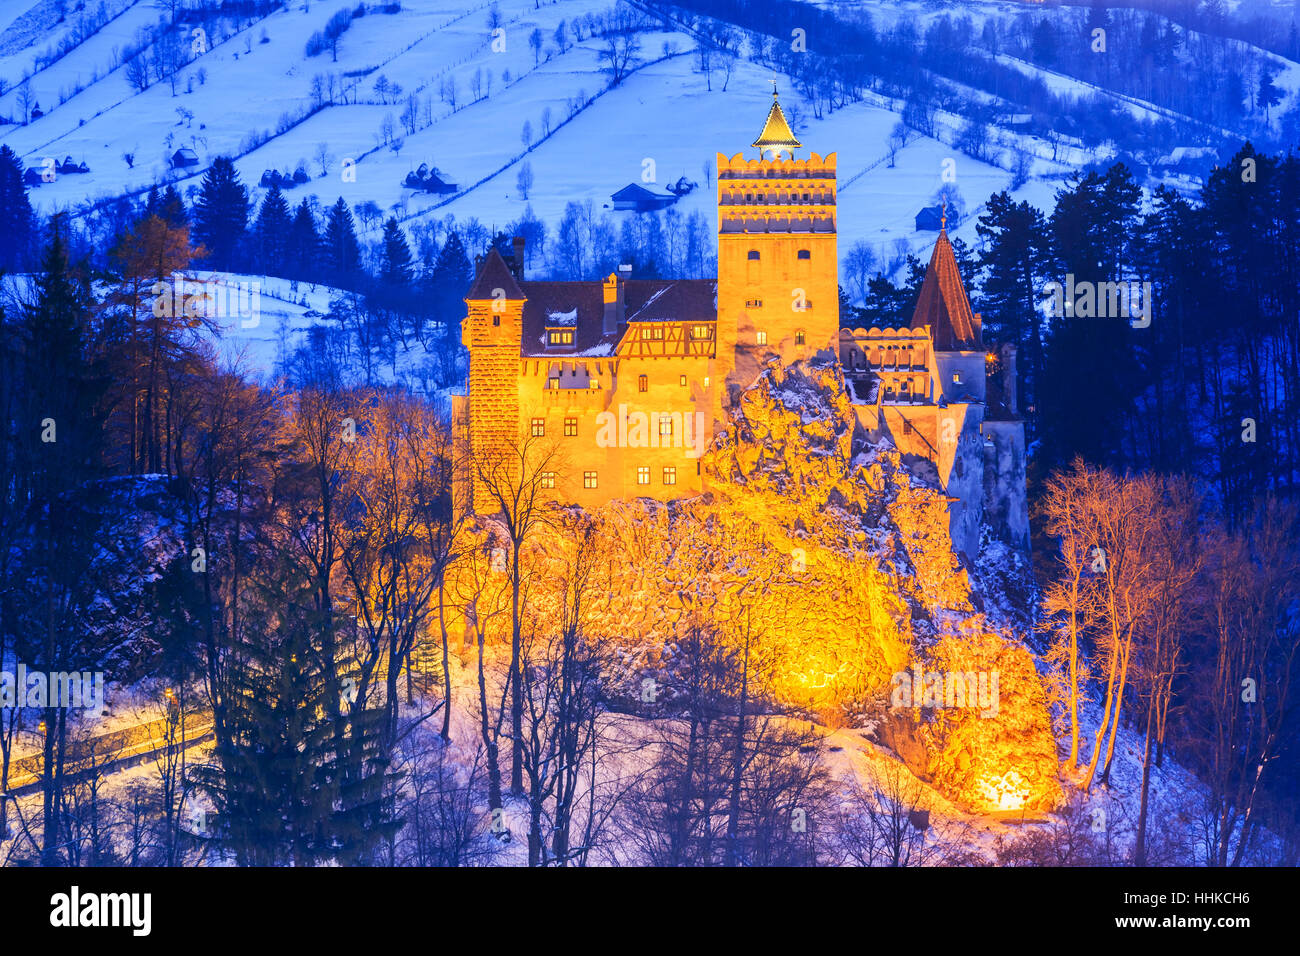 Brasov, in Transilvania. La Romania. Il castello medievale di crusca, noto per la leggenda di Dracula. Foto Stock